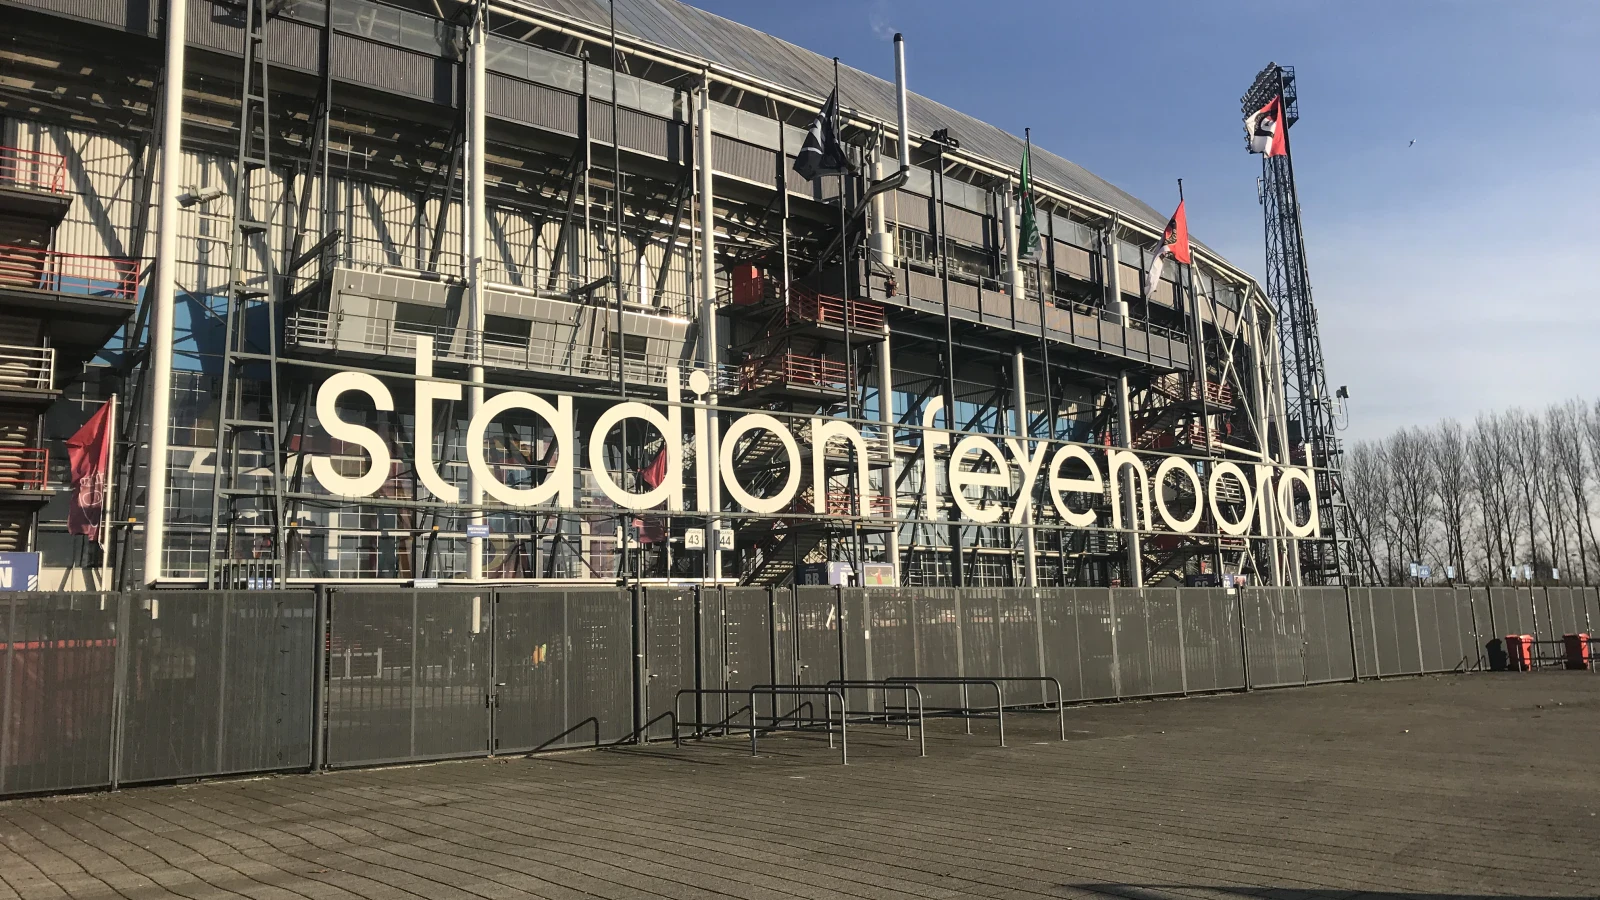 'Feyenoord zet streep door stadswandeling vanwege veiligheidsoverwegingen'